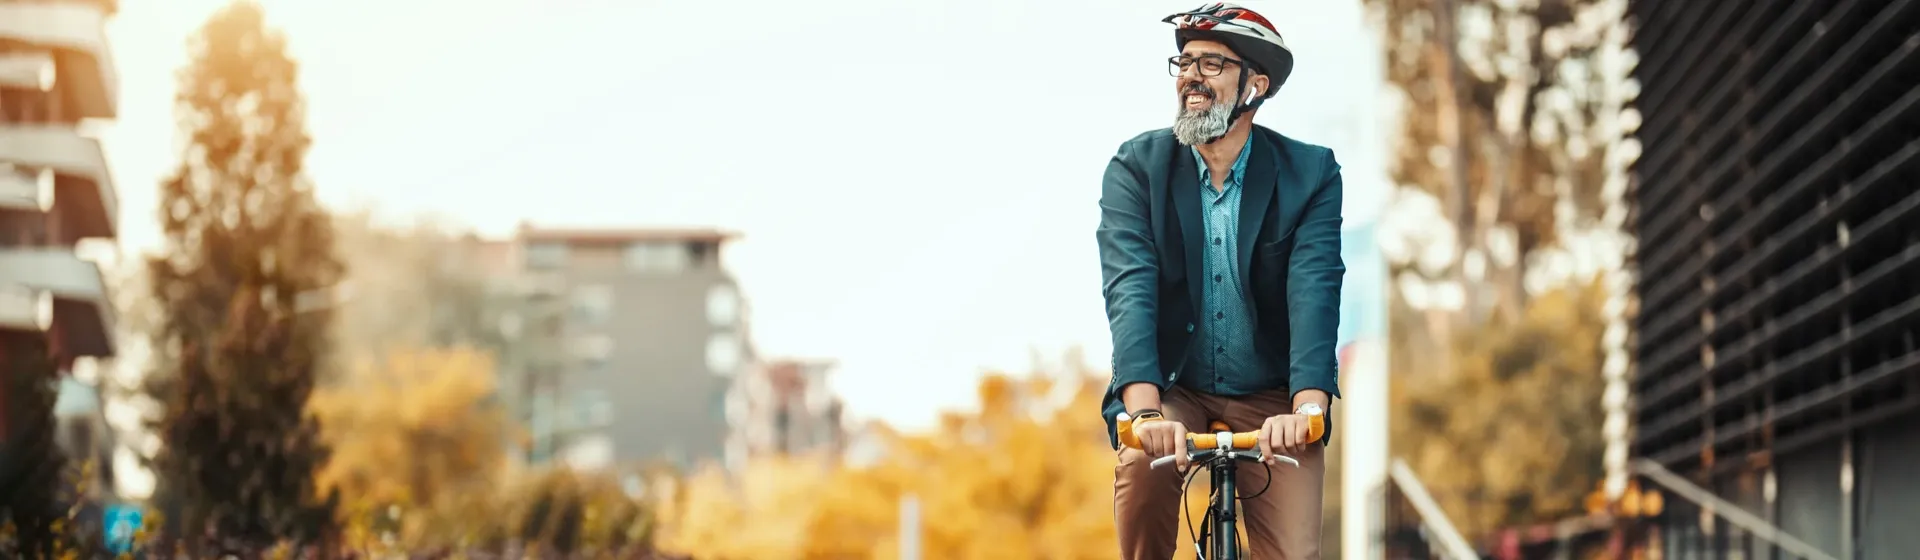 Homem caucasiano de meia idade pedalando em sua bicicleta na cidade